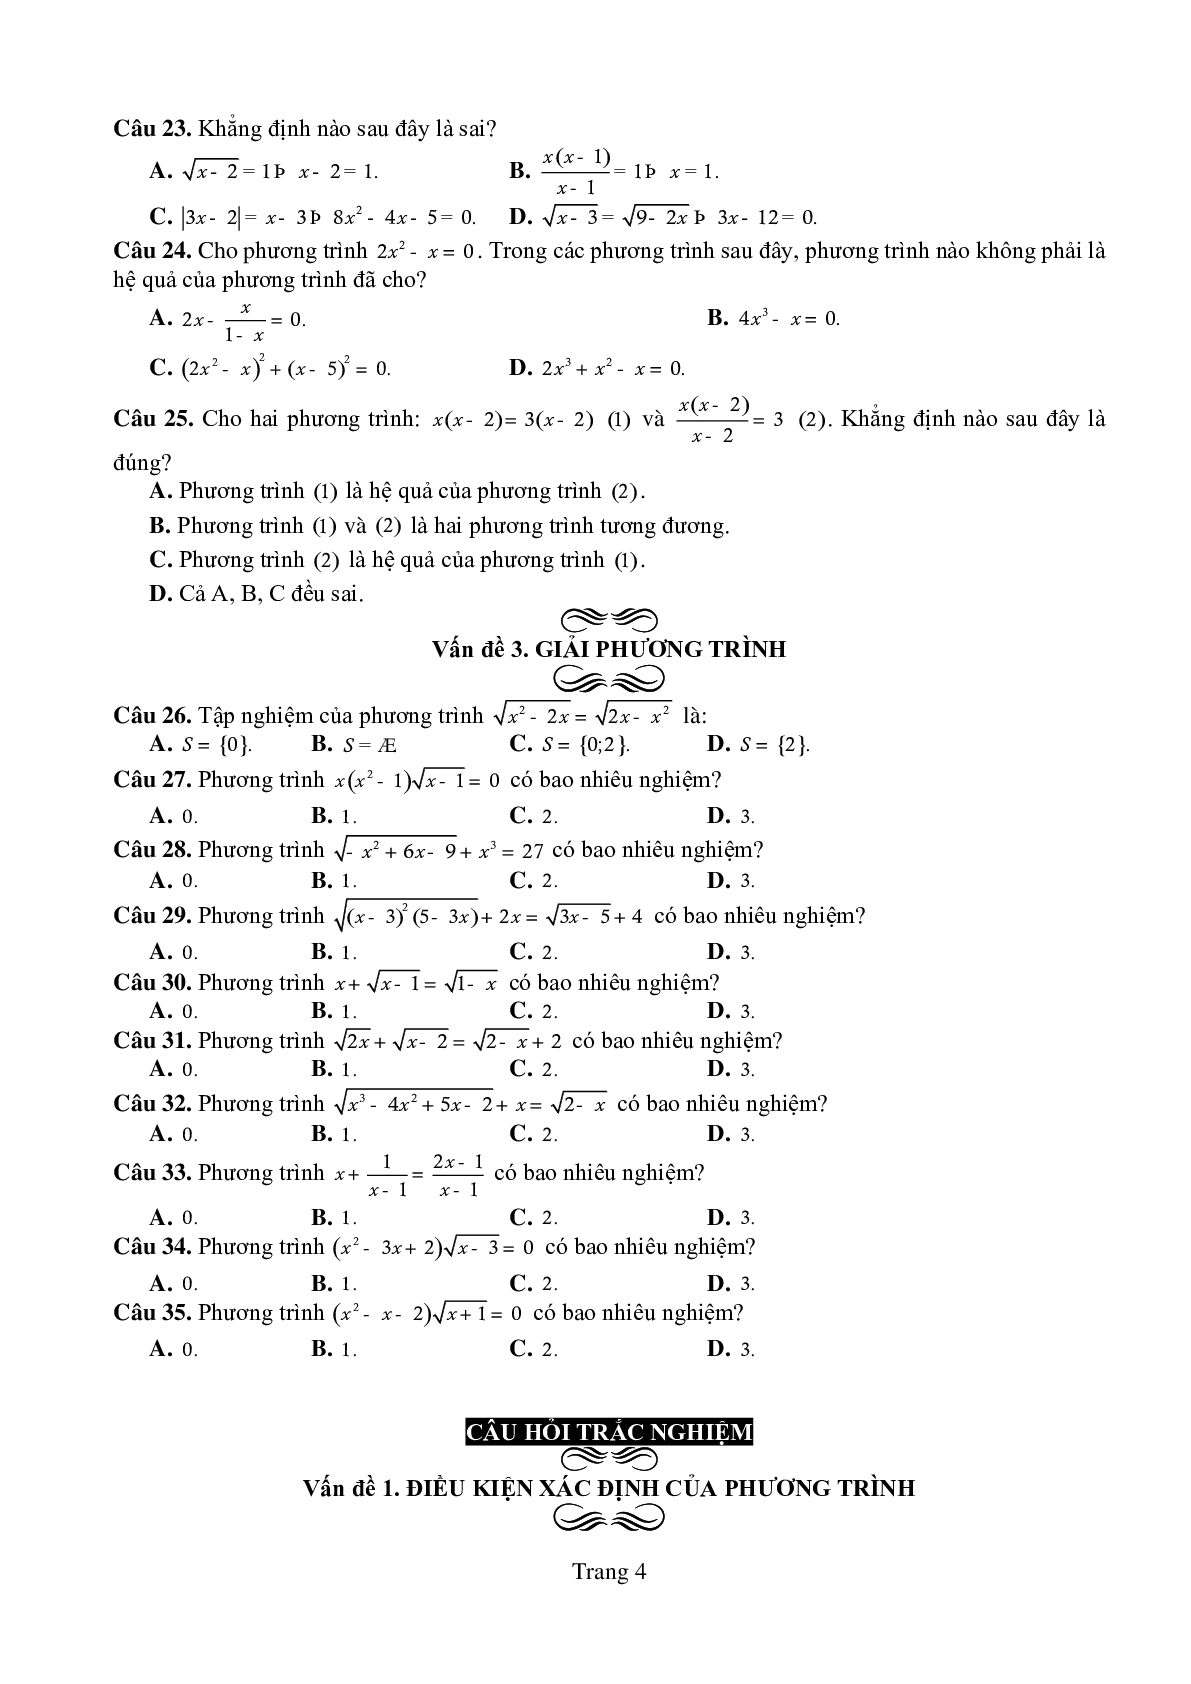 Chuyên đề: Phương trình môn Toán lớp 10 có lời giải chi tiết (trang 4)